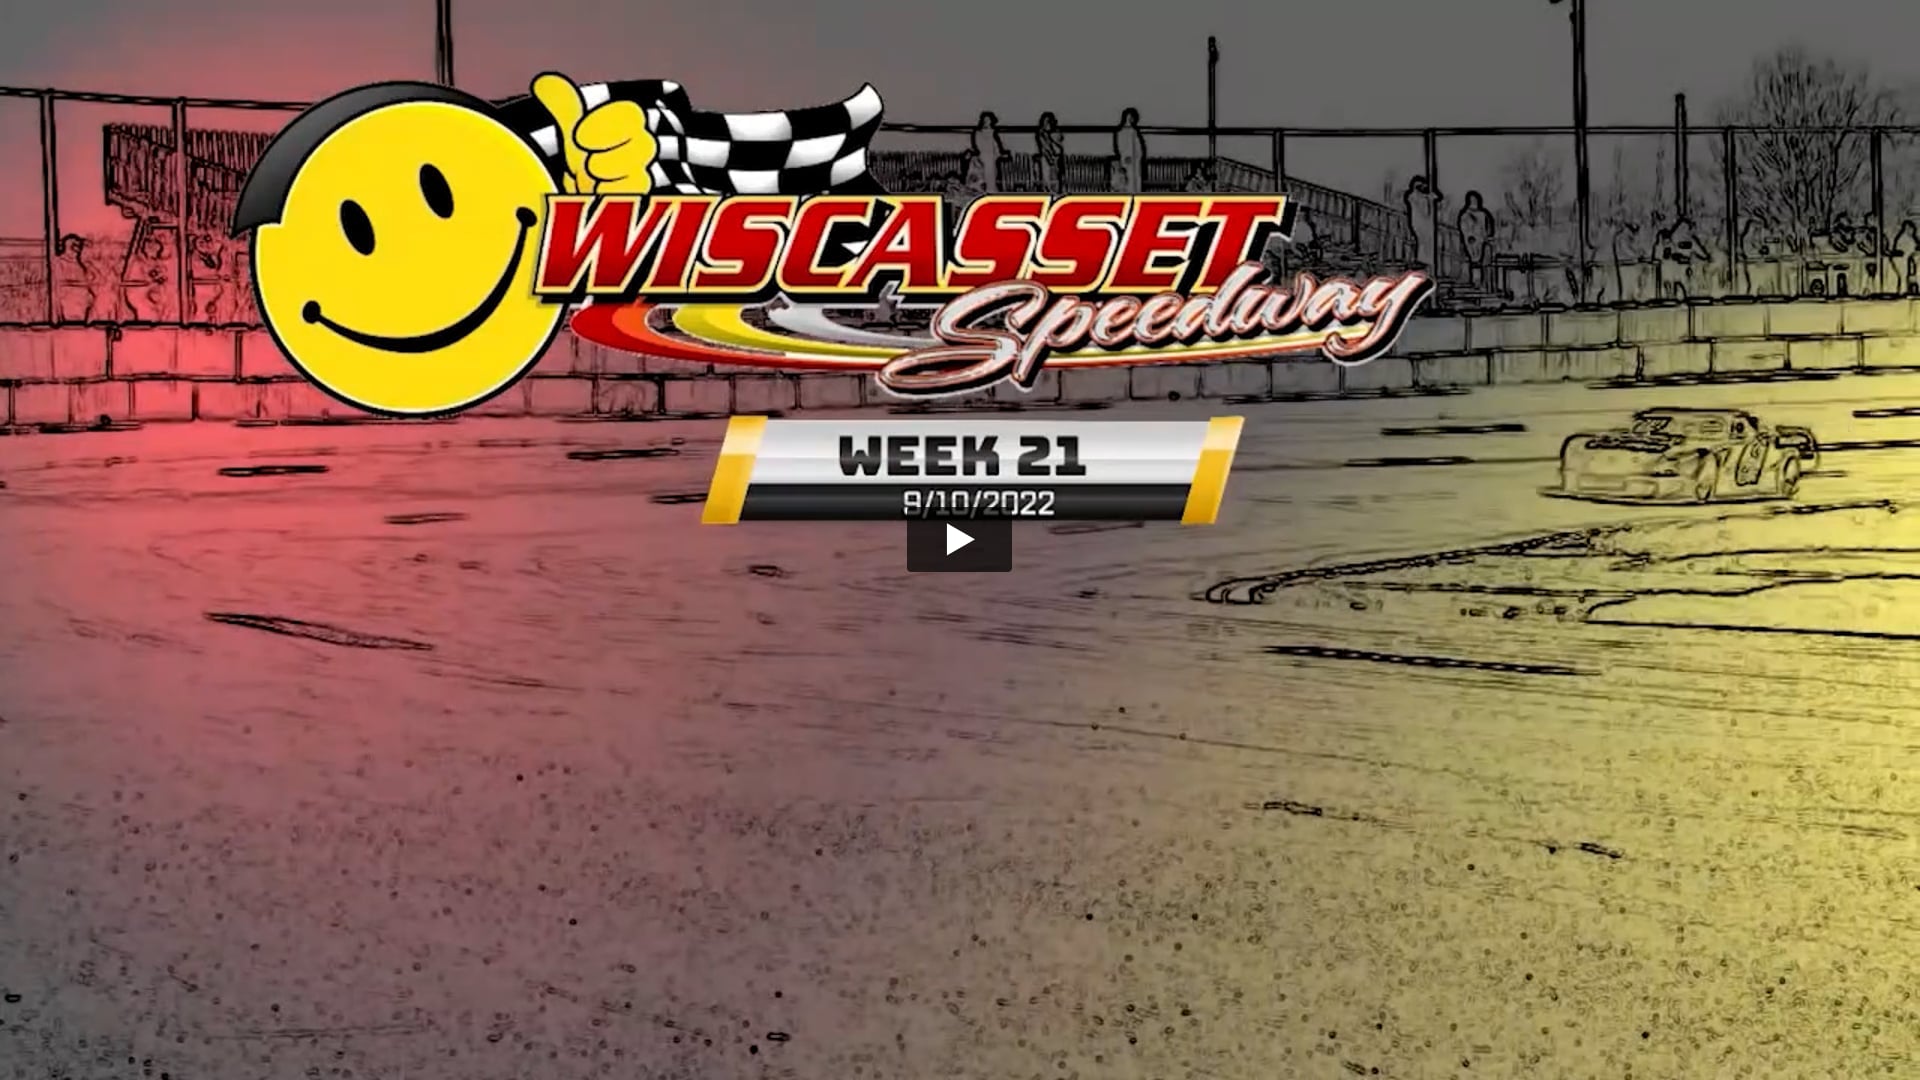 LCTV Wiscasset Speedway 2022: Week 21